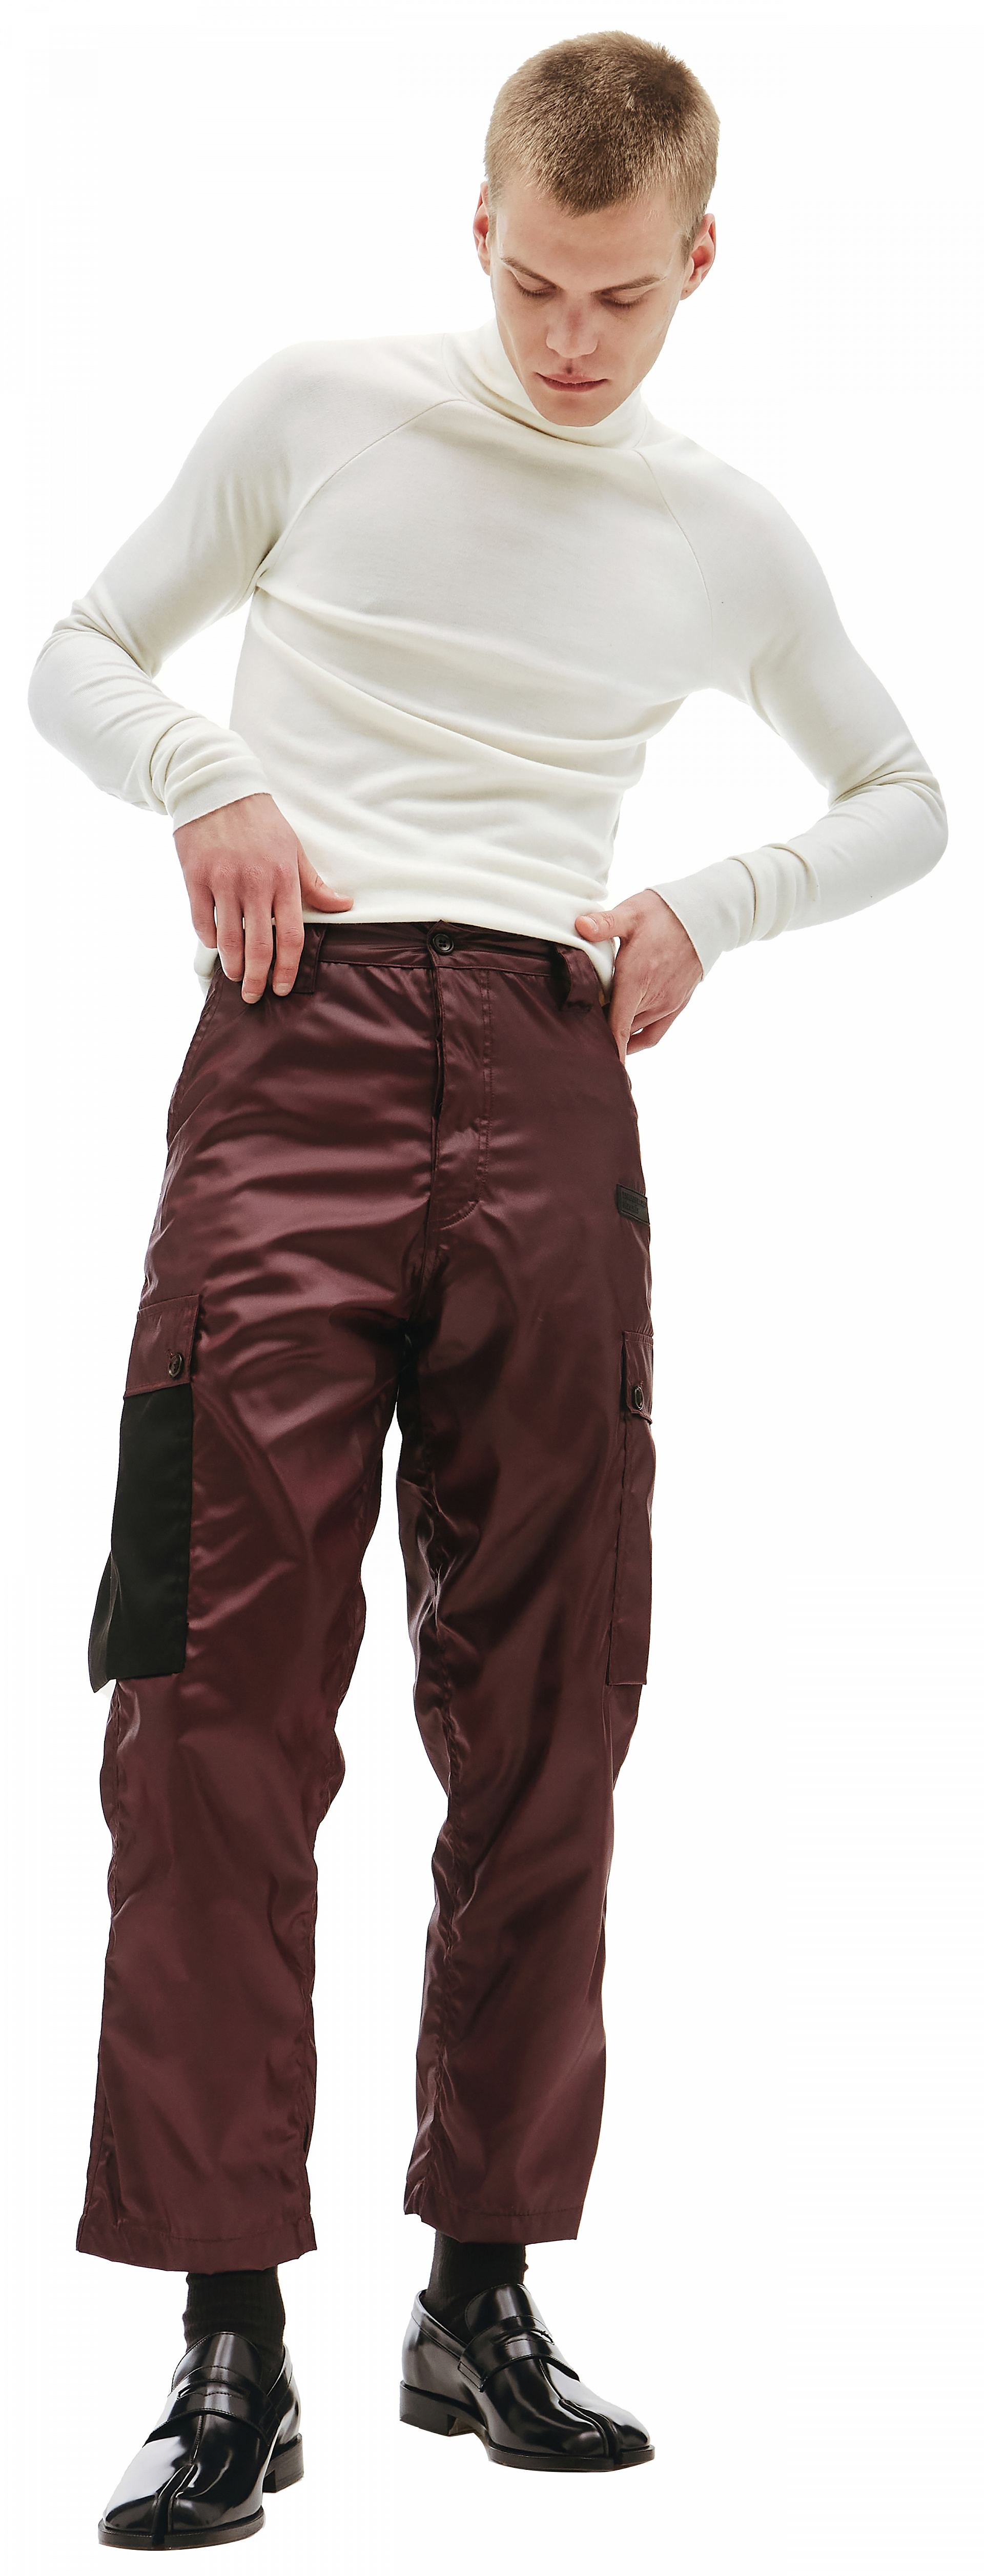 Buy Enfants Riches Deprimes men nylon burgundy cargo trousers for $835 ...